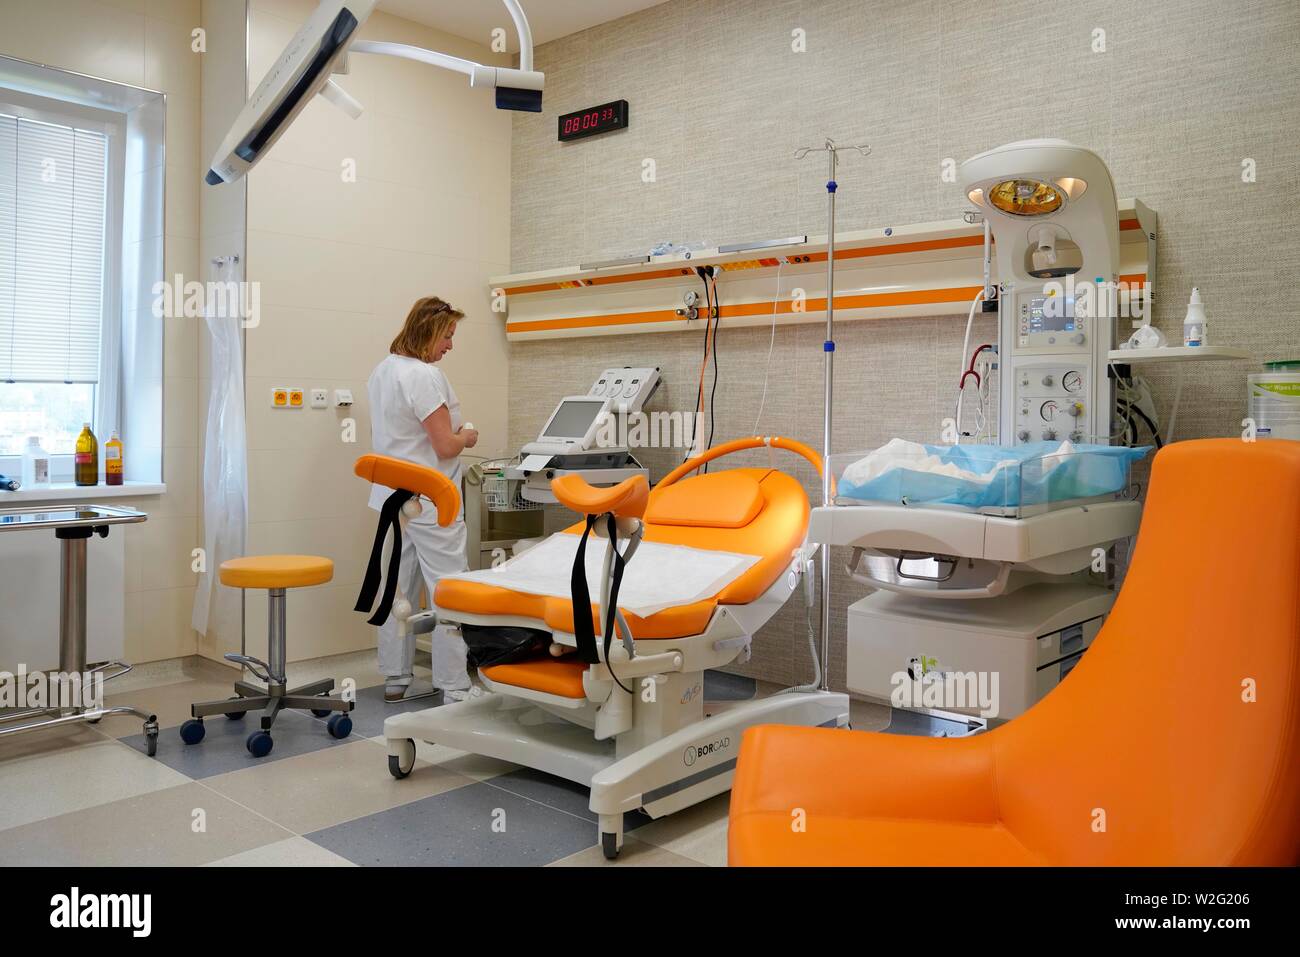 Krankenschwester in einem leeren moderne Kreißsaal mit Geburt Stuhl,  Karlovy Vary, Tschechische Republik Stockfotografie - Alamy